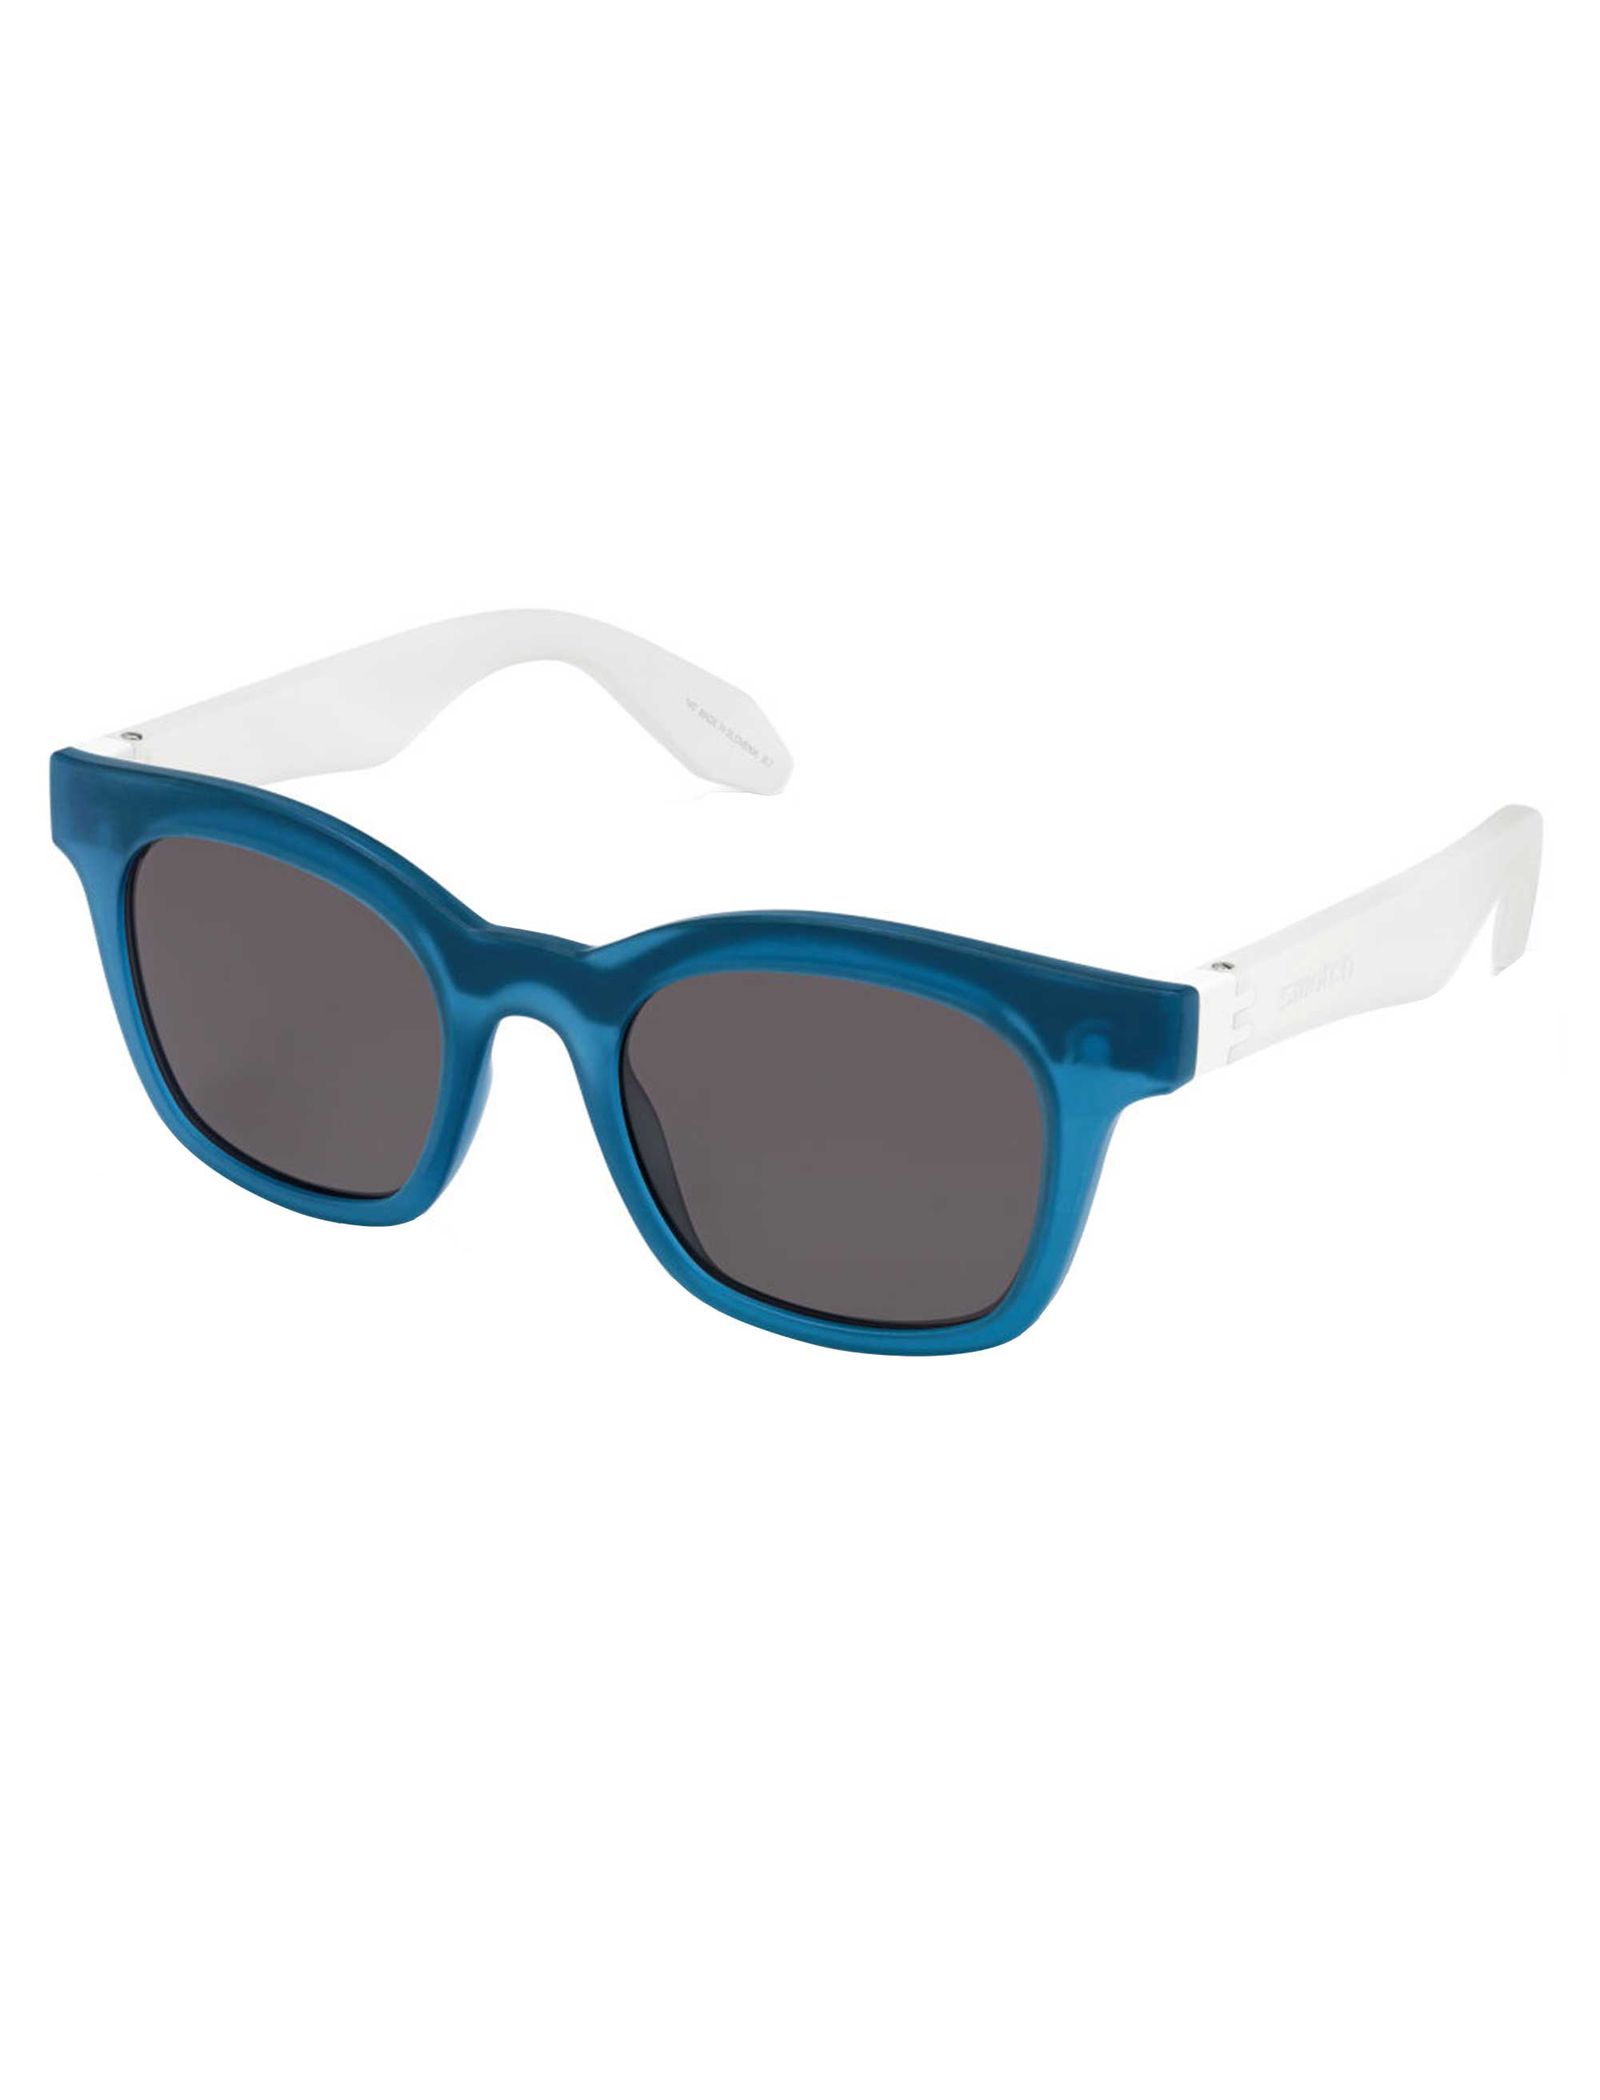 عینک آفتابی سواچ مدل SES02SMB022 - آبی - 3